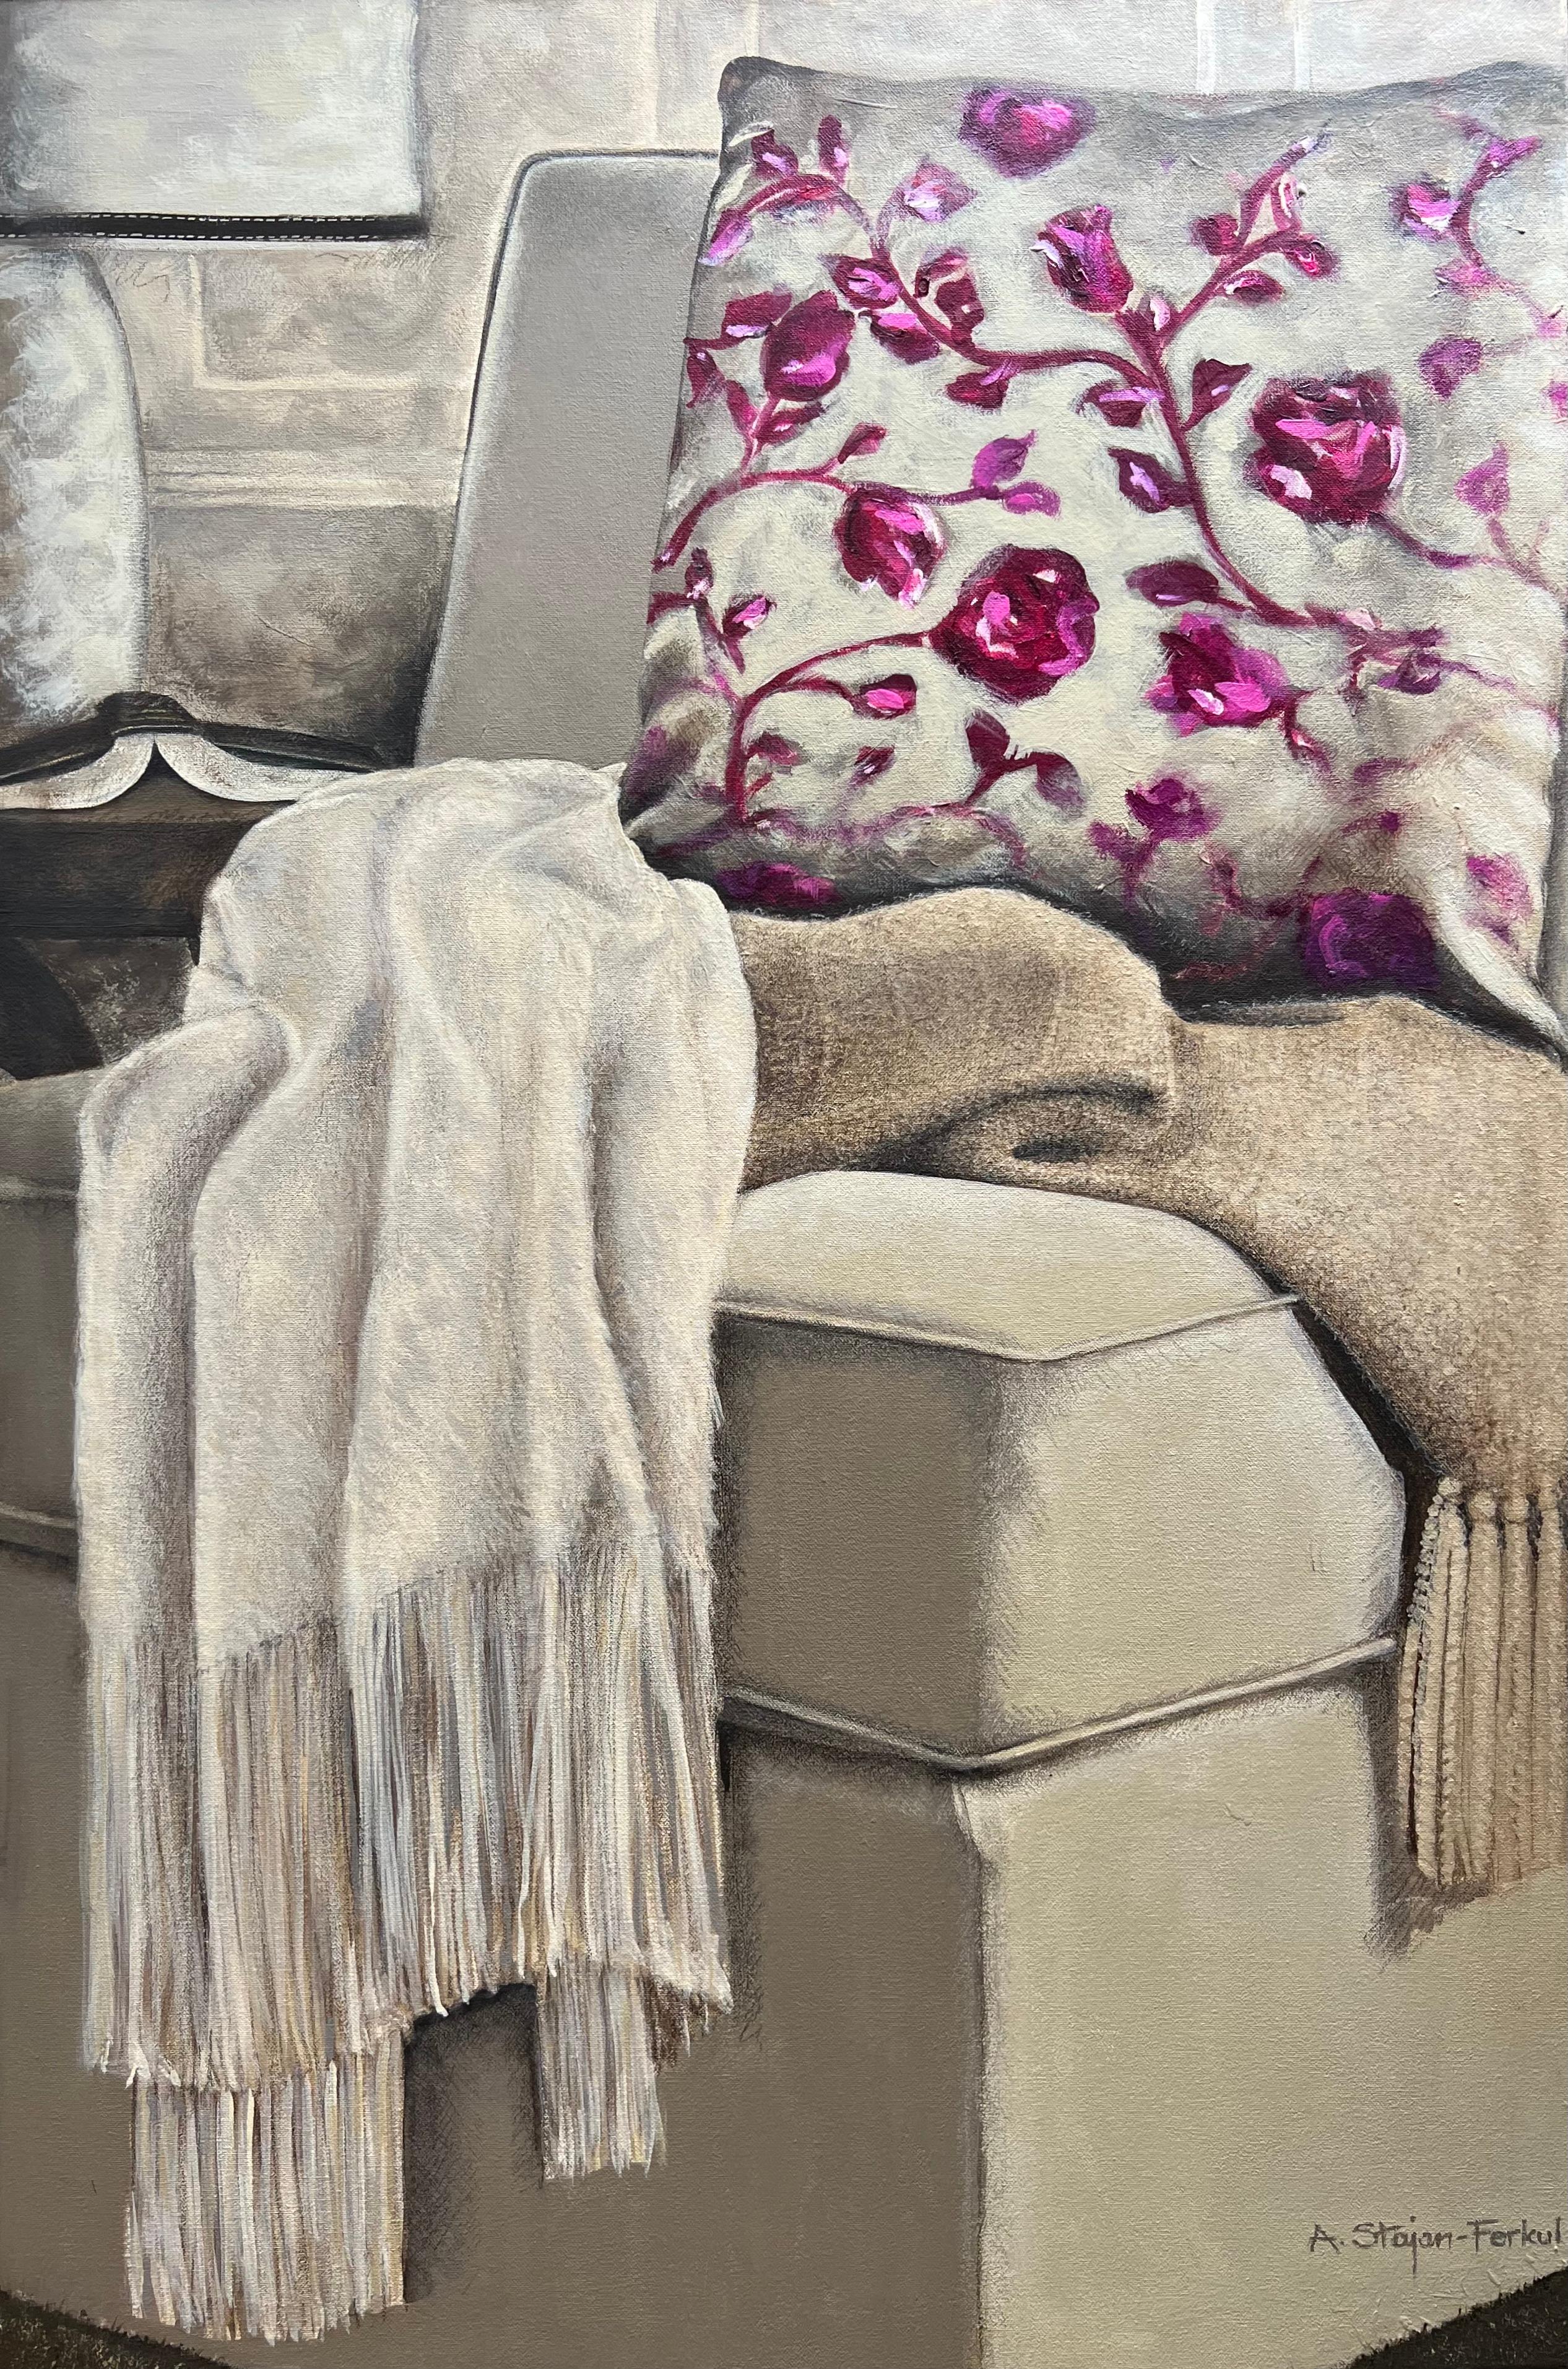 Interior Painting Andrea Stajan-Ferkul - Quiet Time - 24 "x36", peinture d'intérieur nature morte, rose, beige, oreiller, chaise